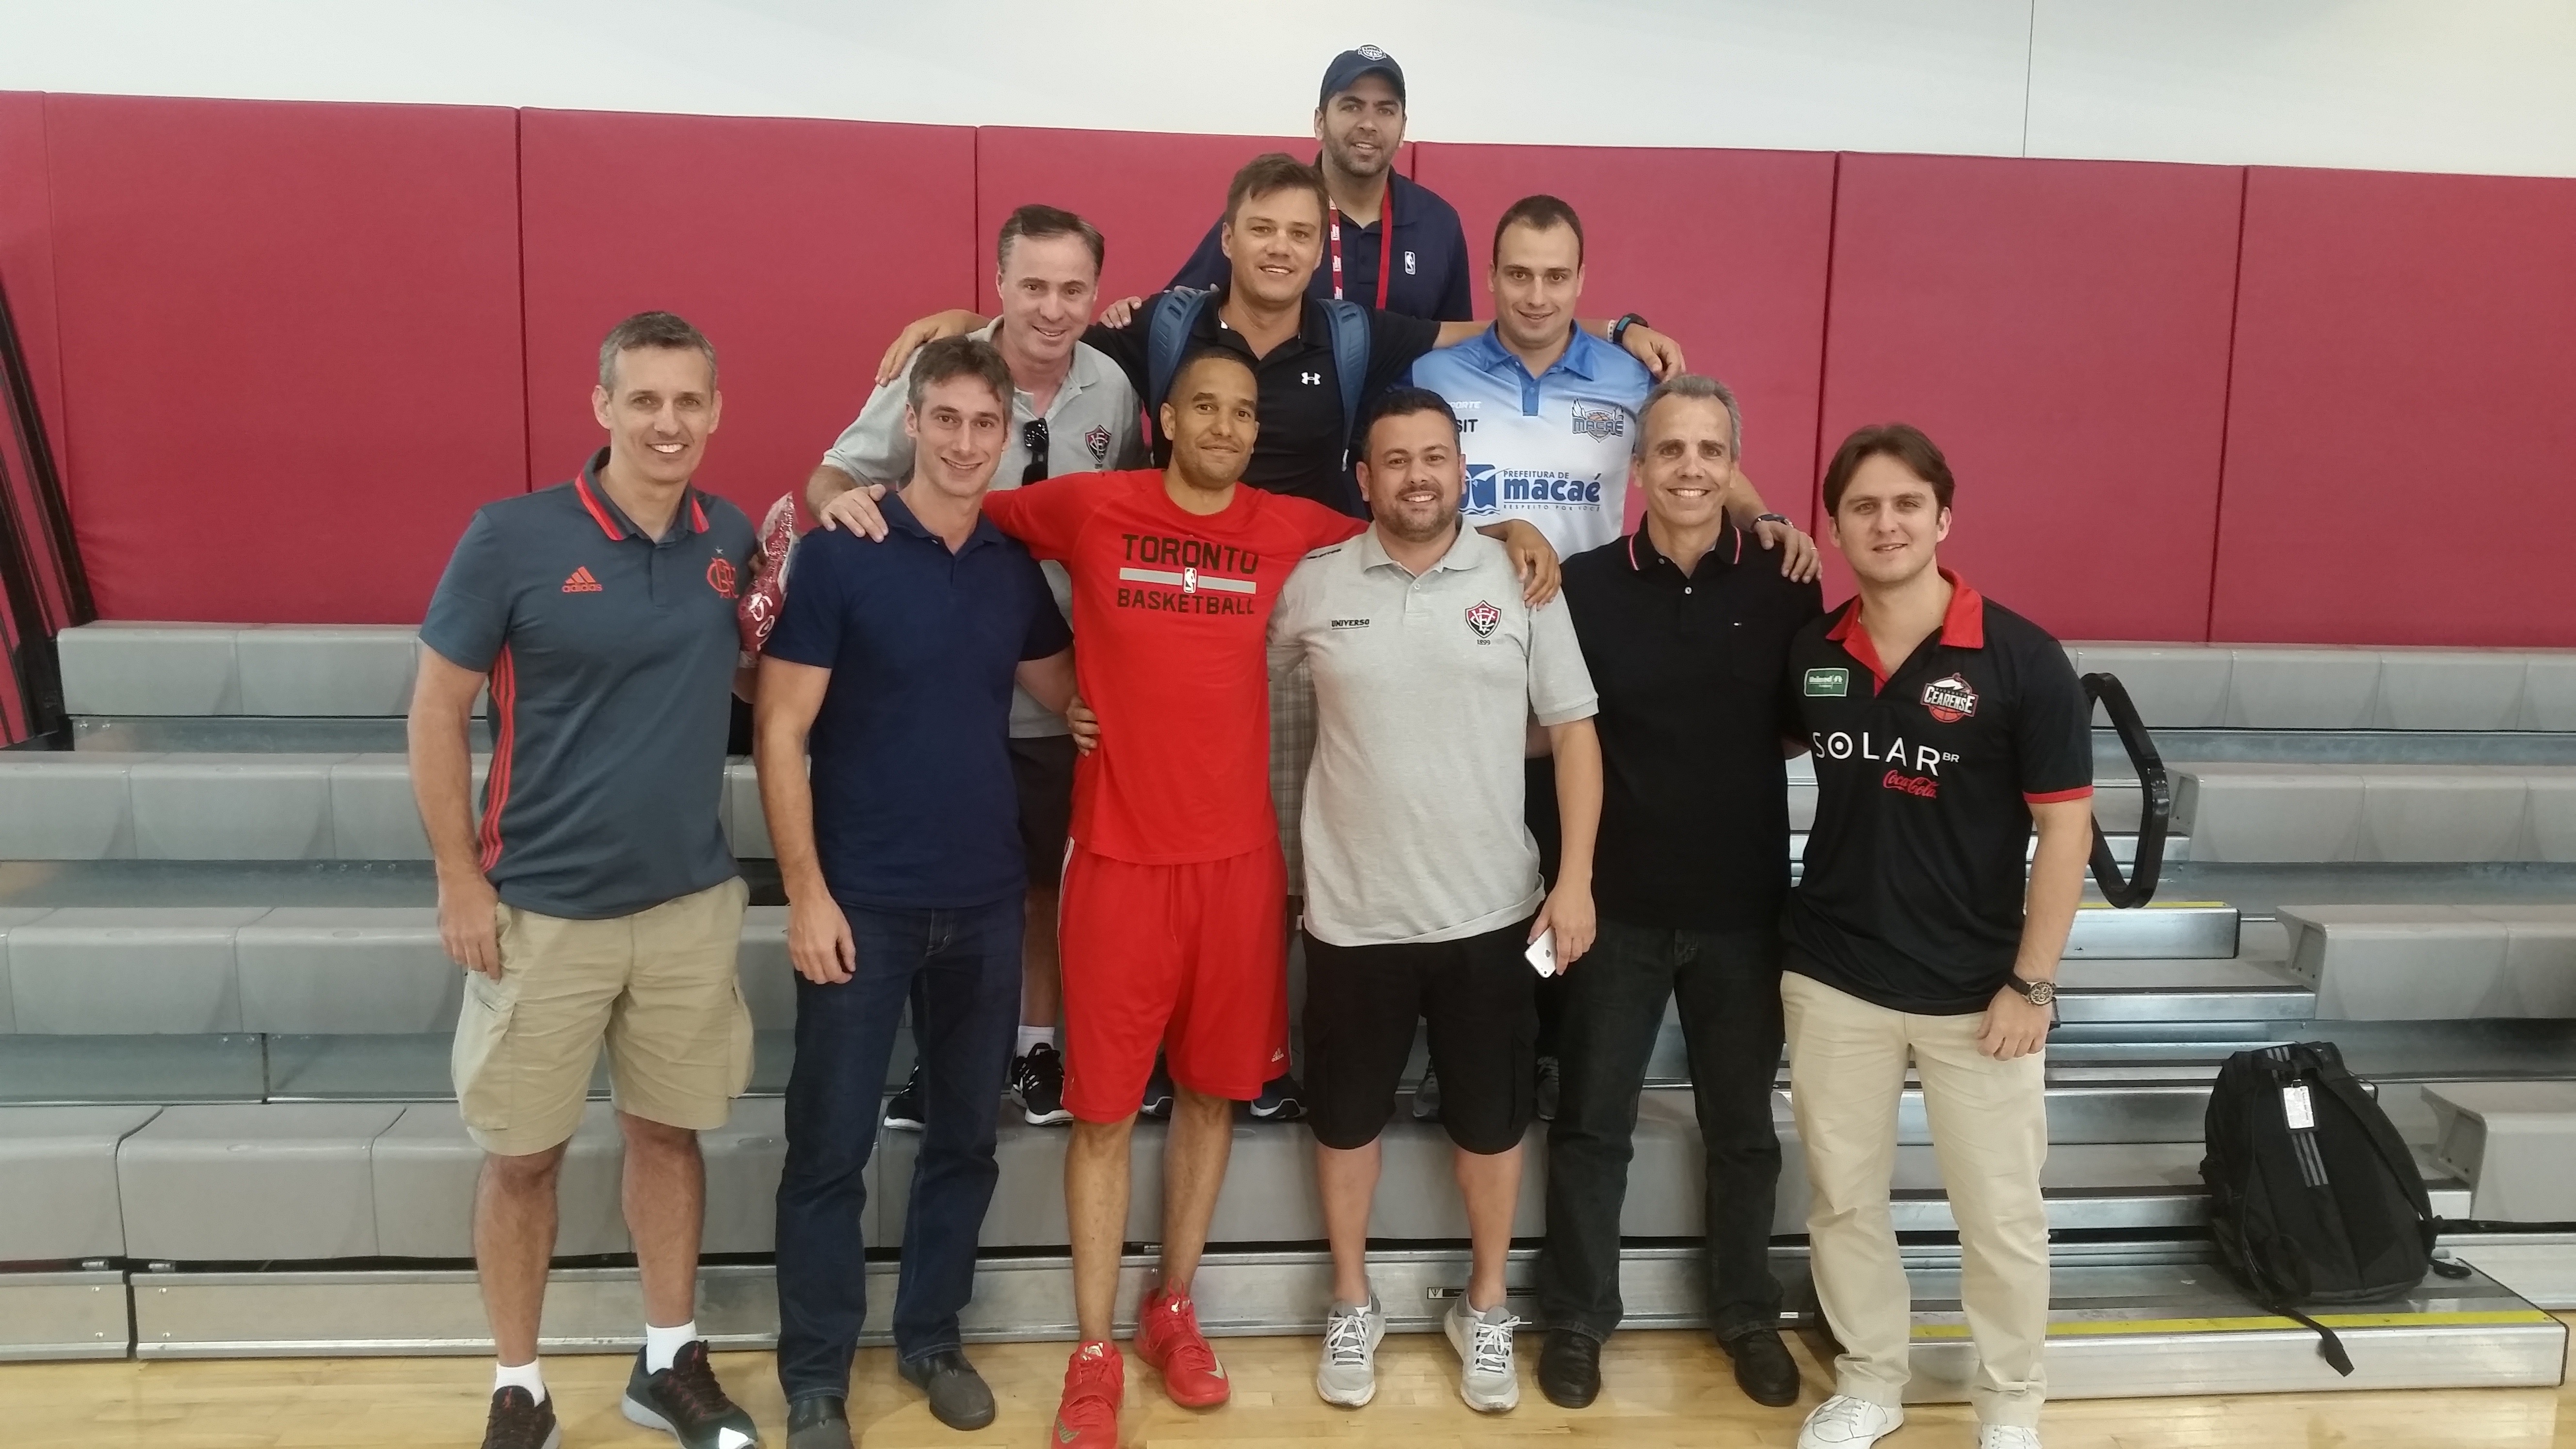 Grupo se reuniu com Jama Mahlalela, assistente técnico do Toronto Raptors (Divulgação)